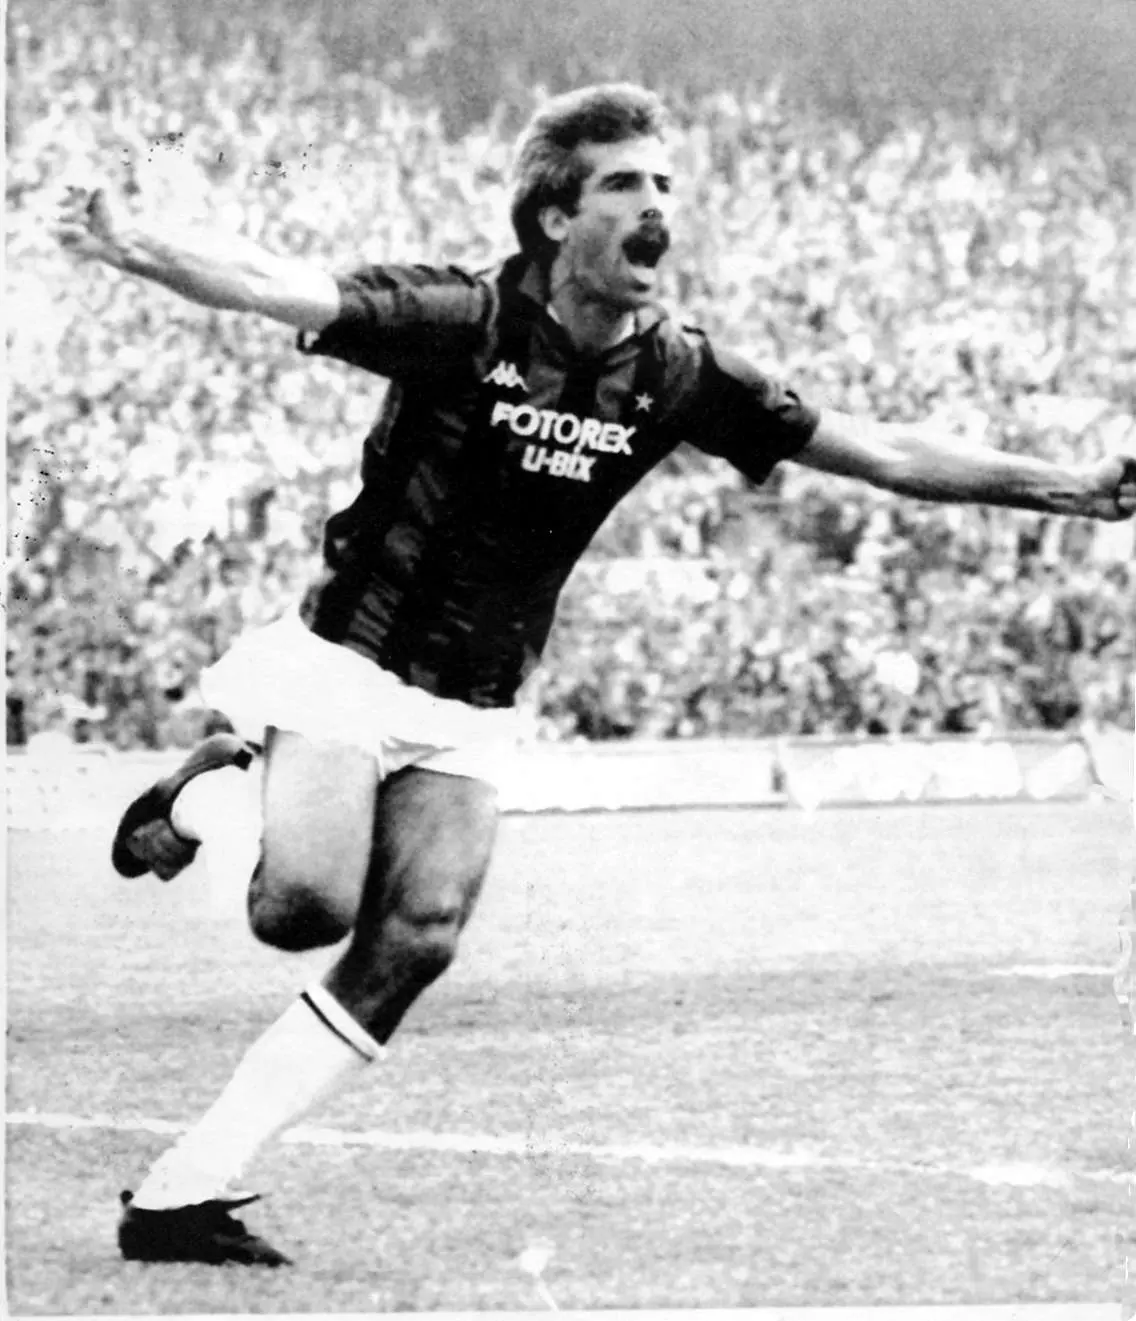 Pietro Paolo Virdis con la maglia del Milan: nel 1987 (segnò a Napoli due gol fondamentali per la vittoria finale del tricolore) (foto Archivio Unione Sarda)